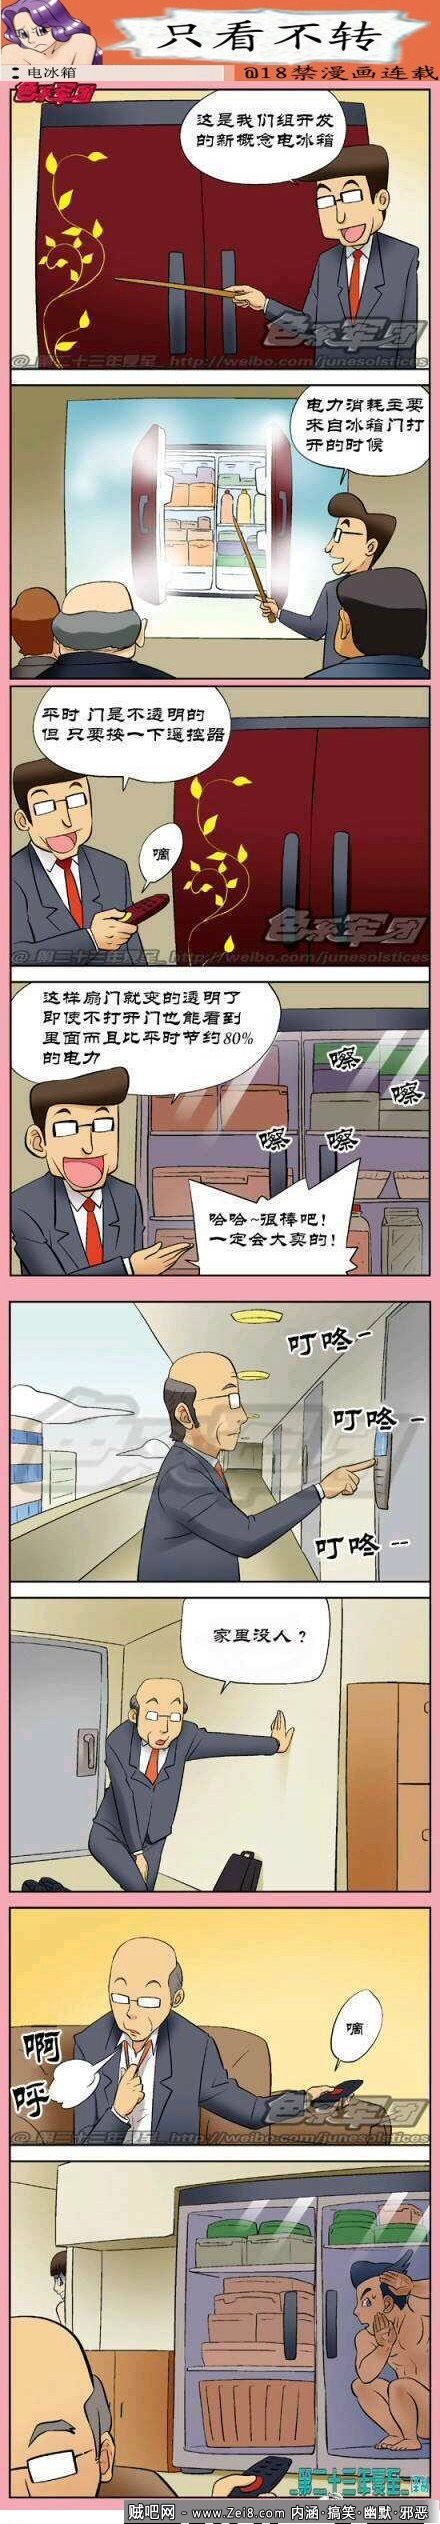 [韩国电冰箱系列漫画]：高科技的妙用